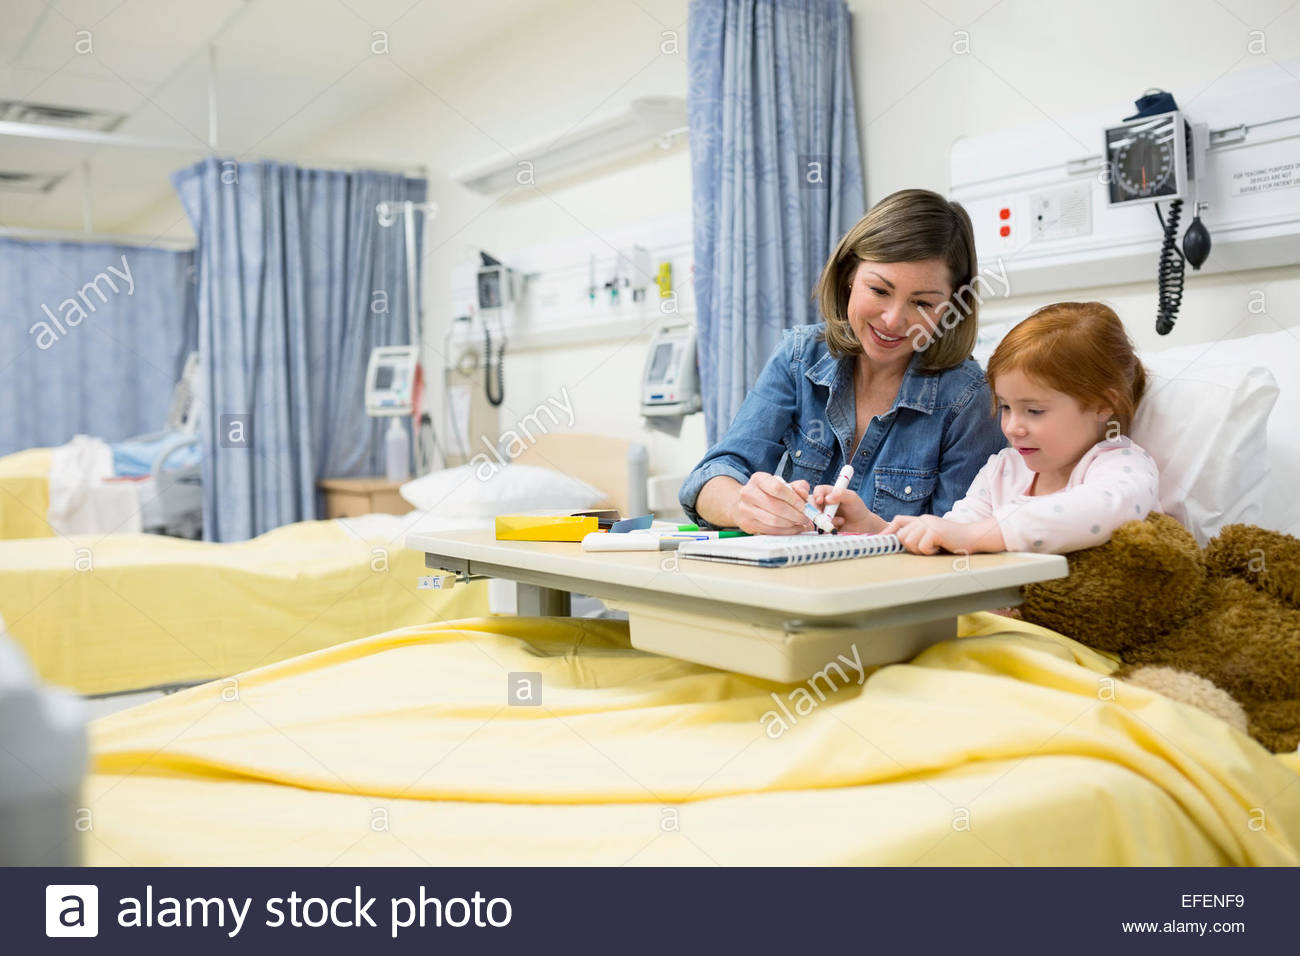 Madre e hija colorear habitación de hospital Foto de stock